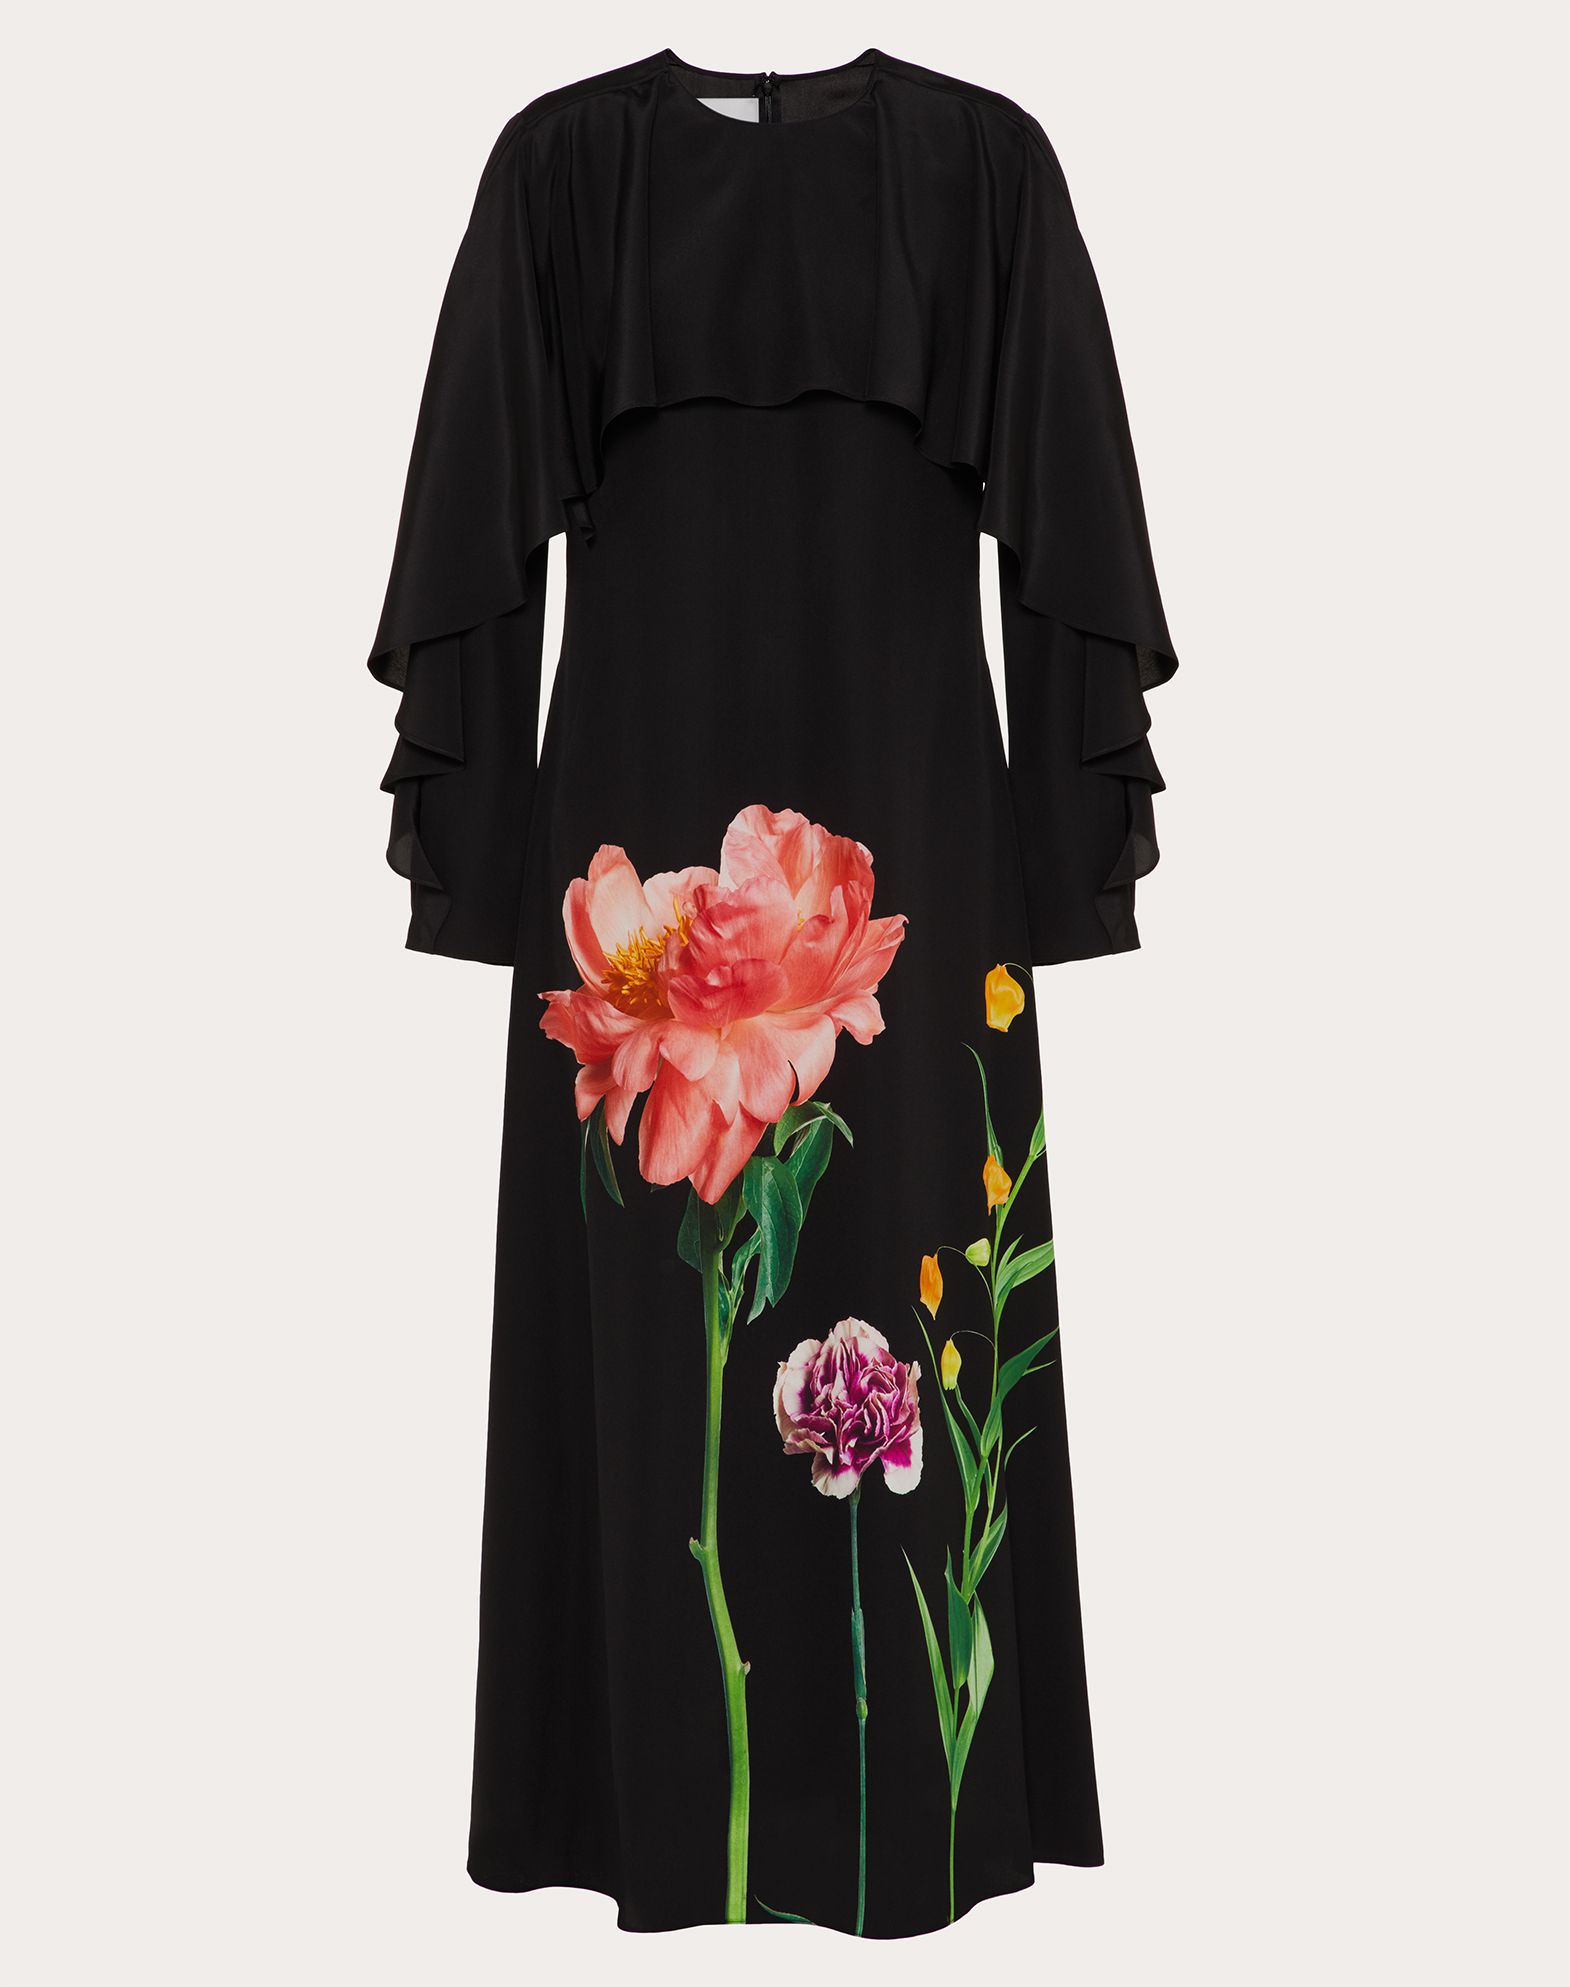 Valentino Printed Crepe De Chine Dress In Black/multicolor